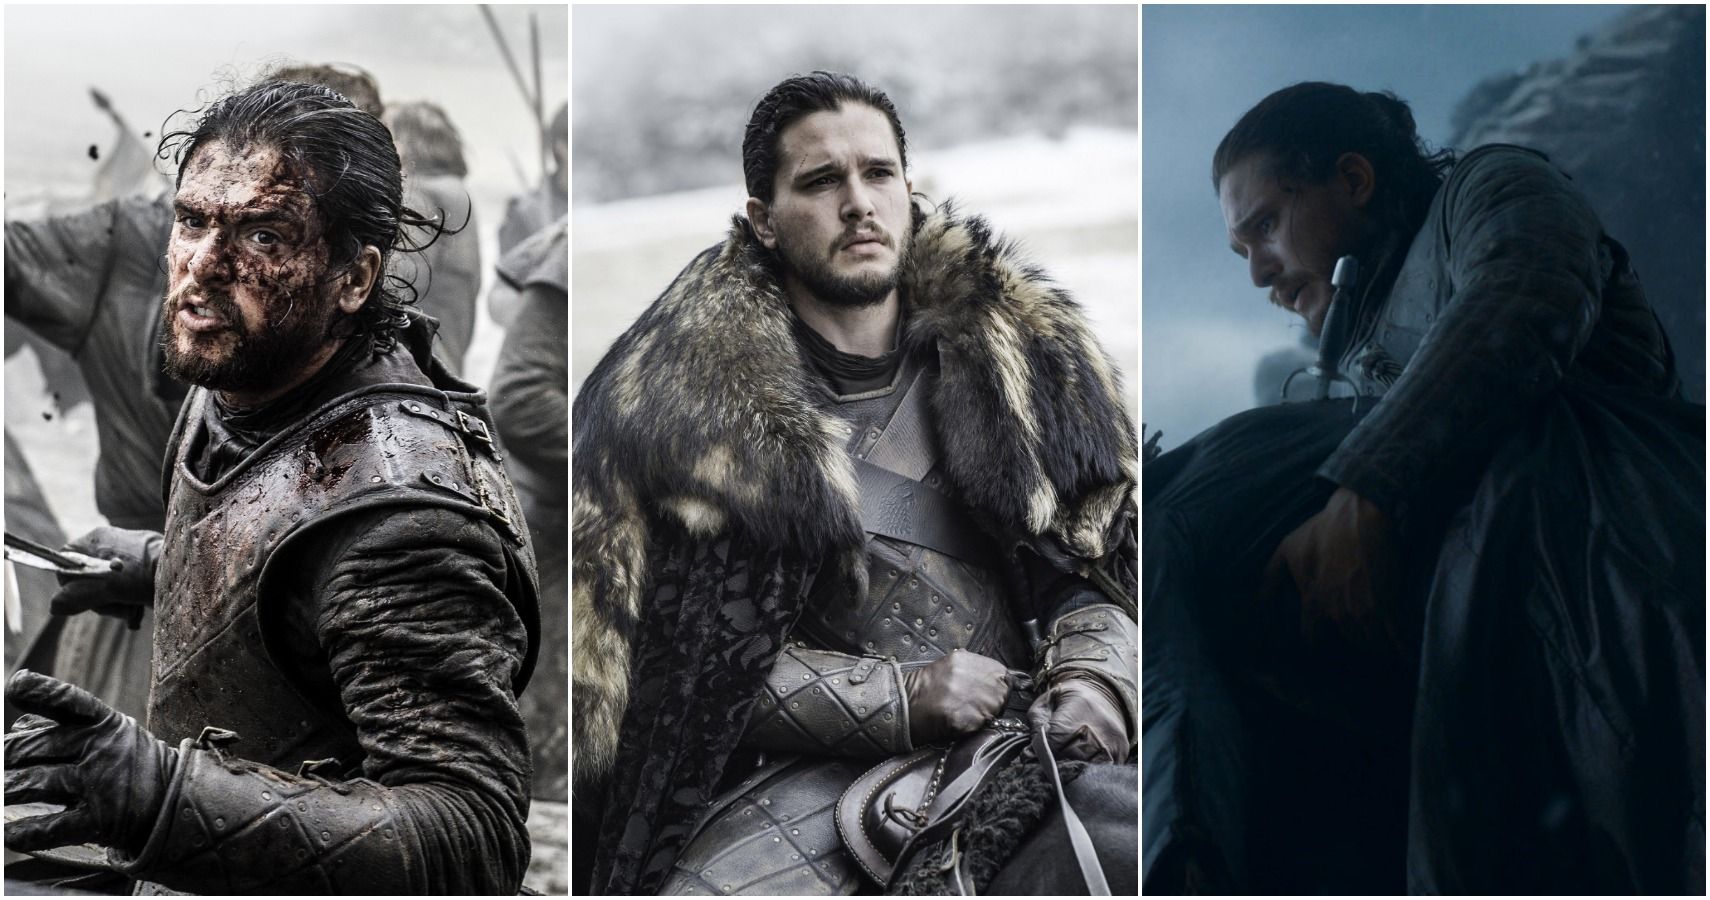 Juego de tronos: 5 formas en que Jon Snow fue un rey digno (y 5 formas en que no lo fue)